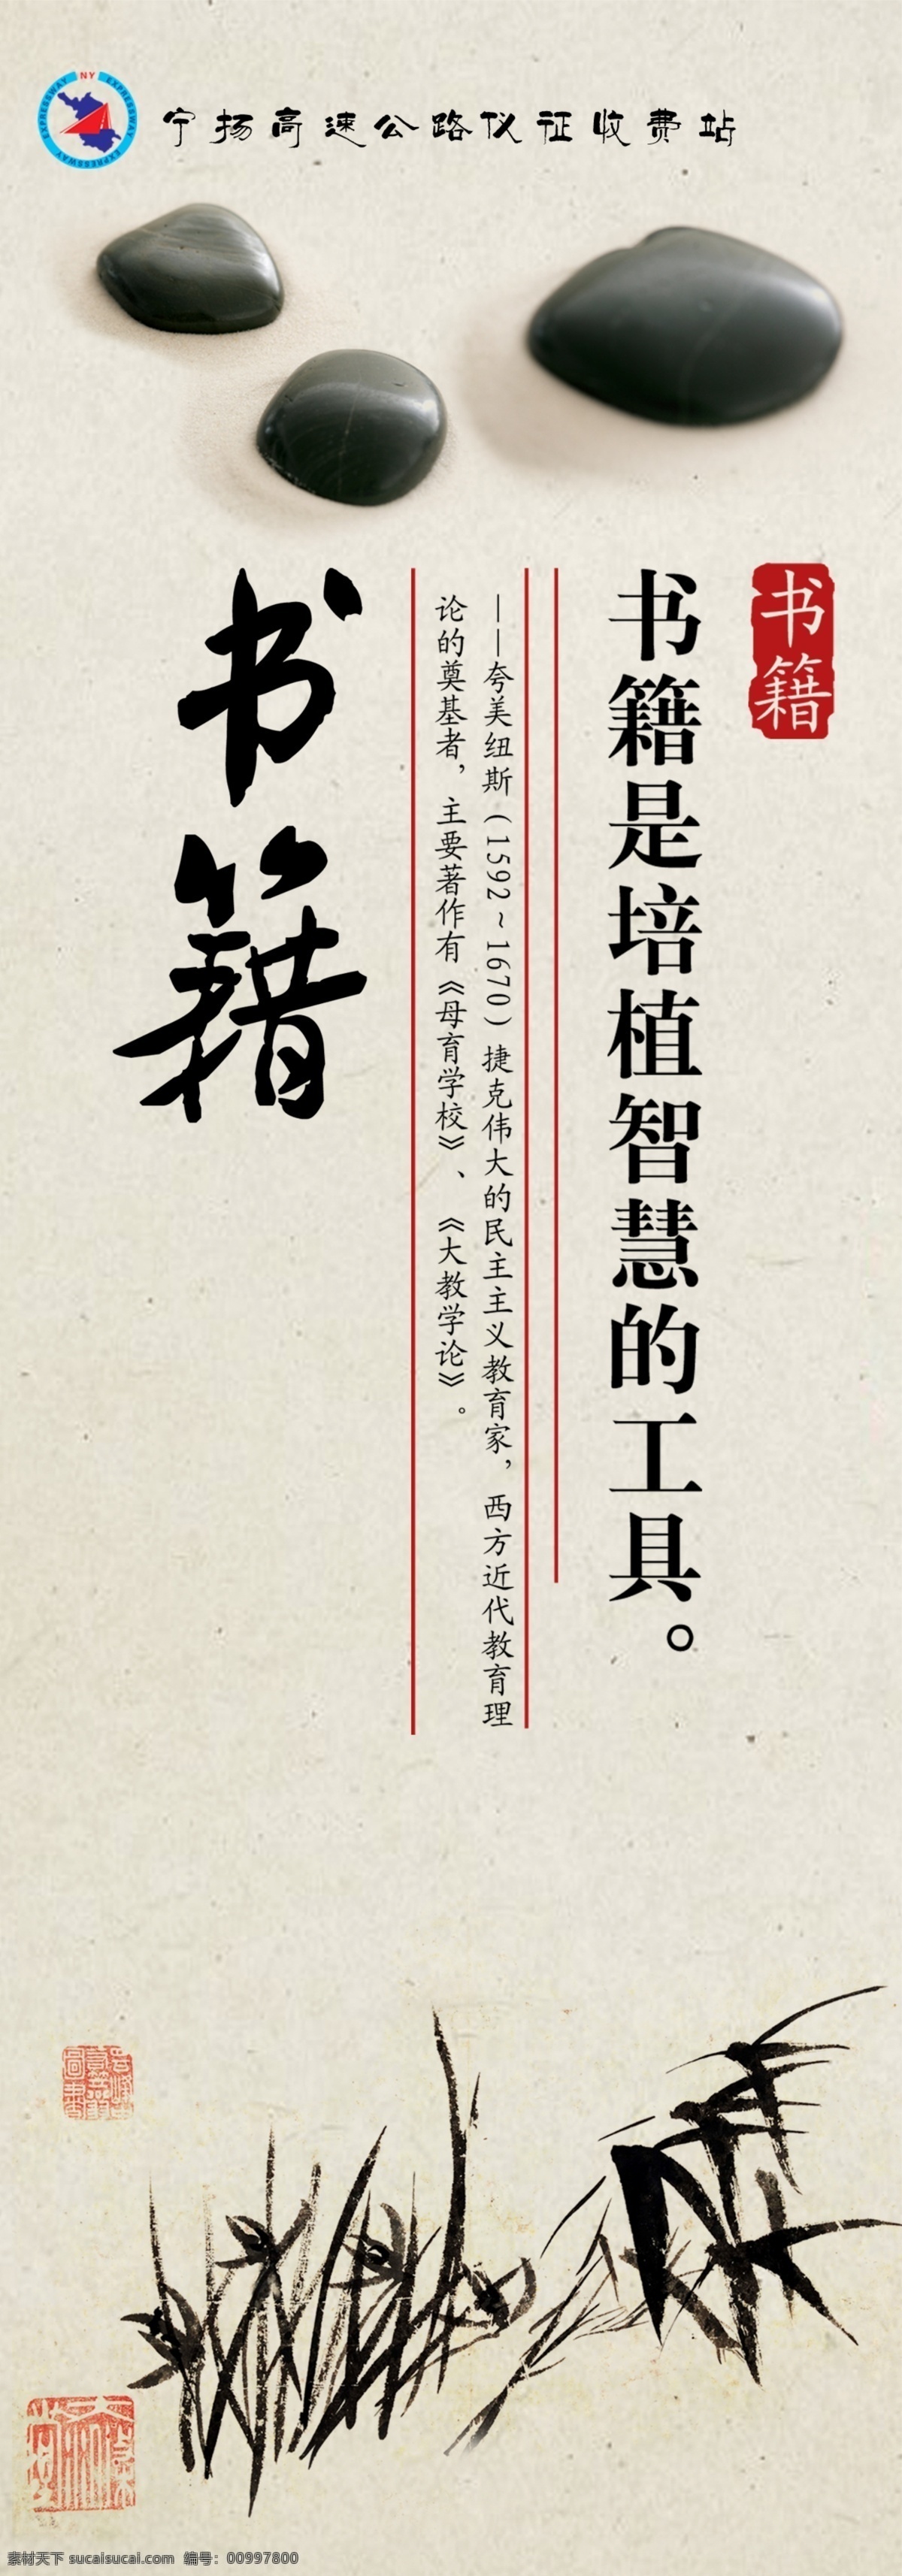 读书名言 中国风 名人名言 名言 书籍 展板模板 广告设计模板 源文件